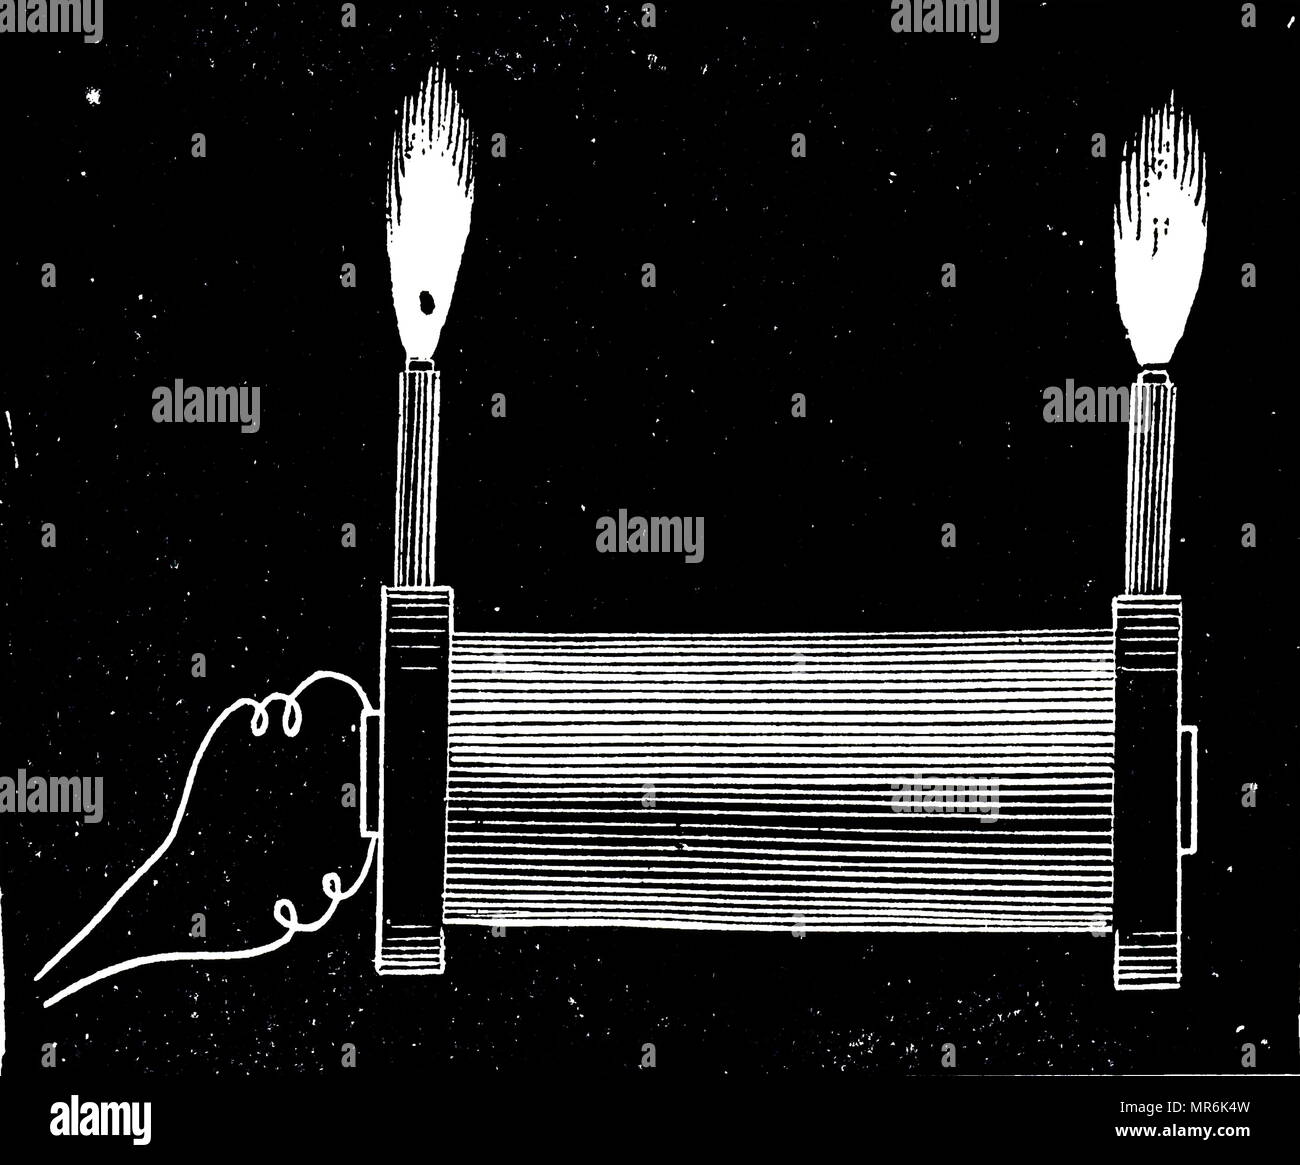 Gravur, Nikola Tesla's A.C. Experimente: Hochfrequenz Bürste aus einer Spule entladen. Nikola Tesla (1856-1943) eine Serbian-American Erfinder, Elektrotechniker, Maschinenbauer, Physiker und Zukunftsforscher. Vom 20. Jahrhundert Stockfoto